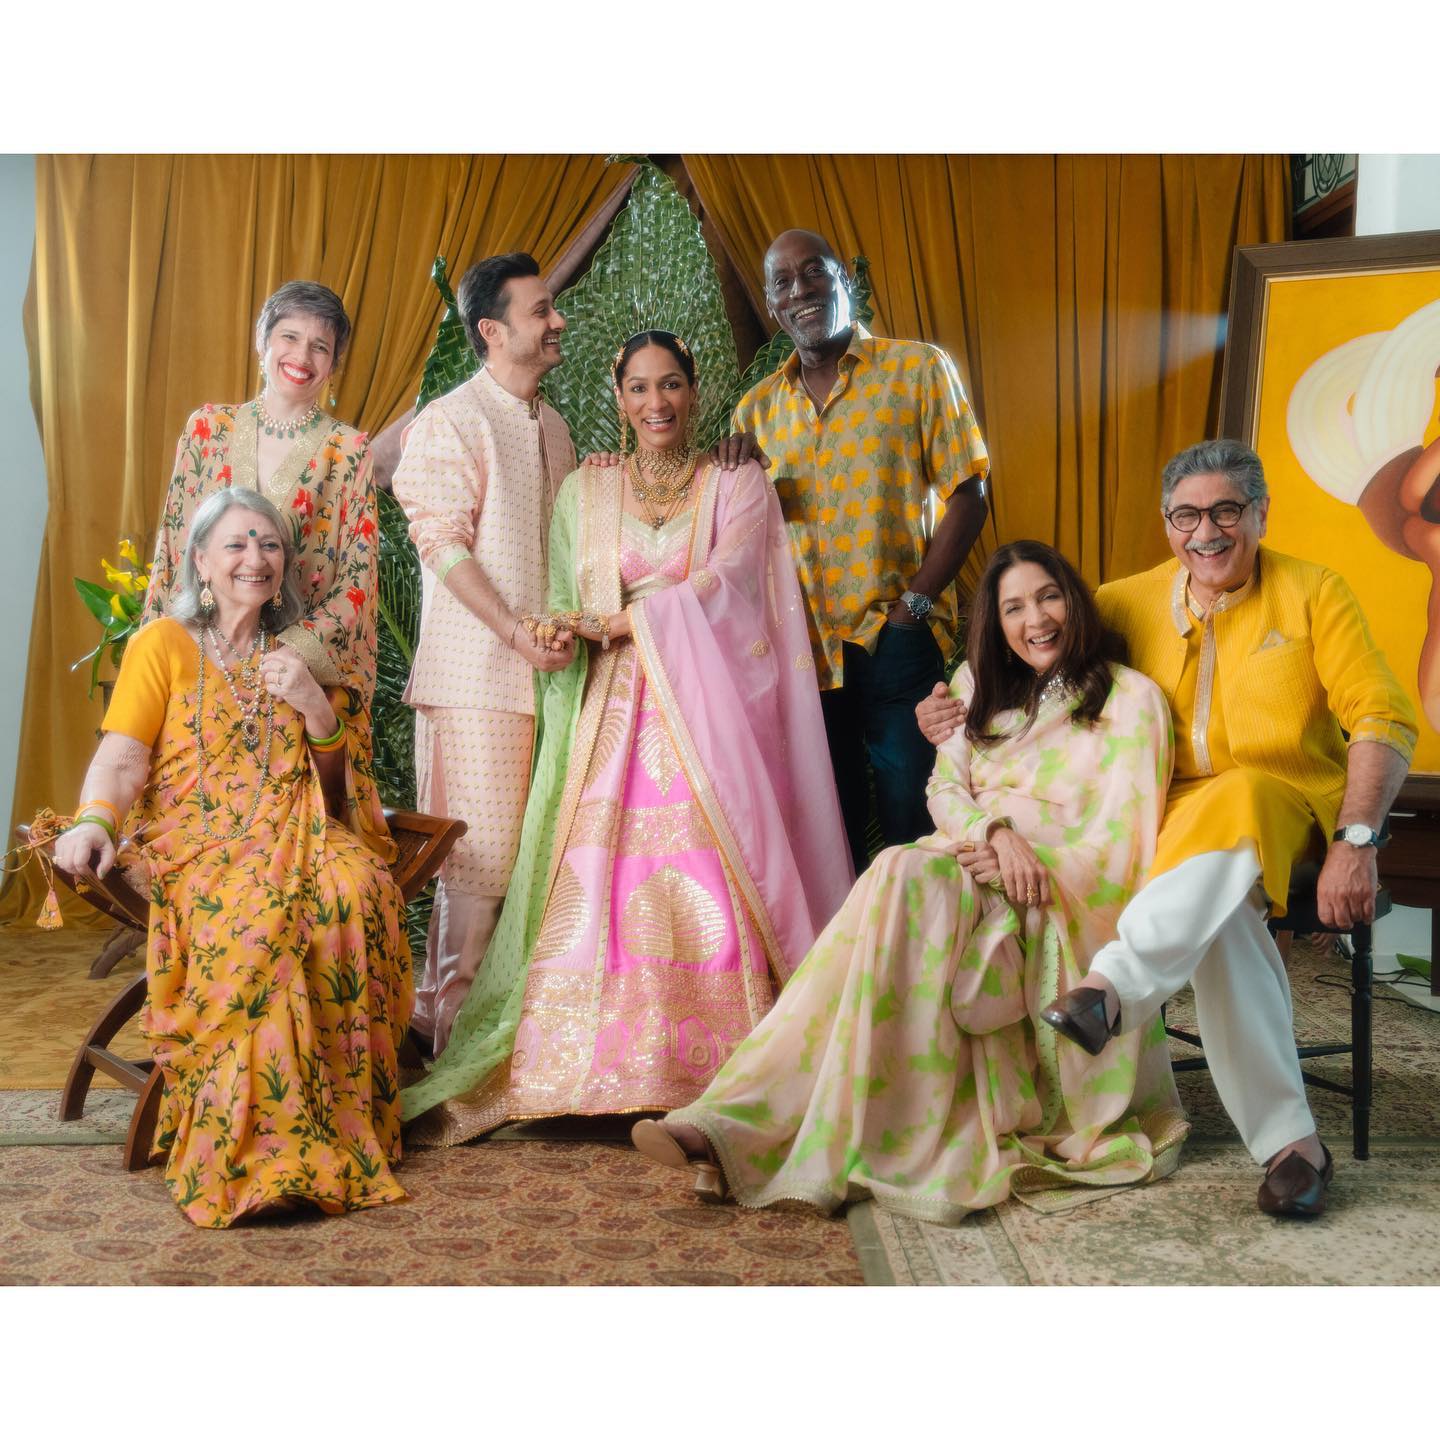 Masab gupta-Satyadeep Misra's wedding 